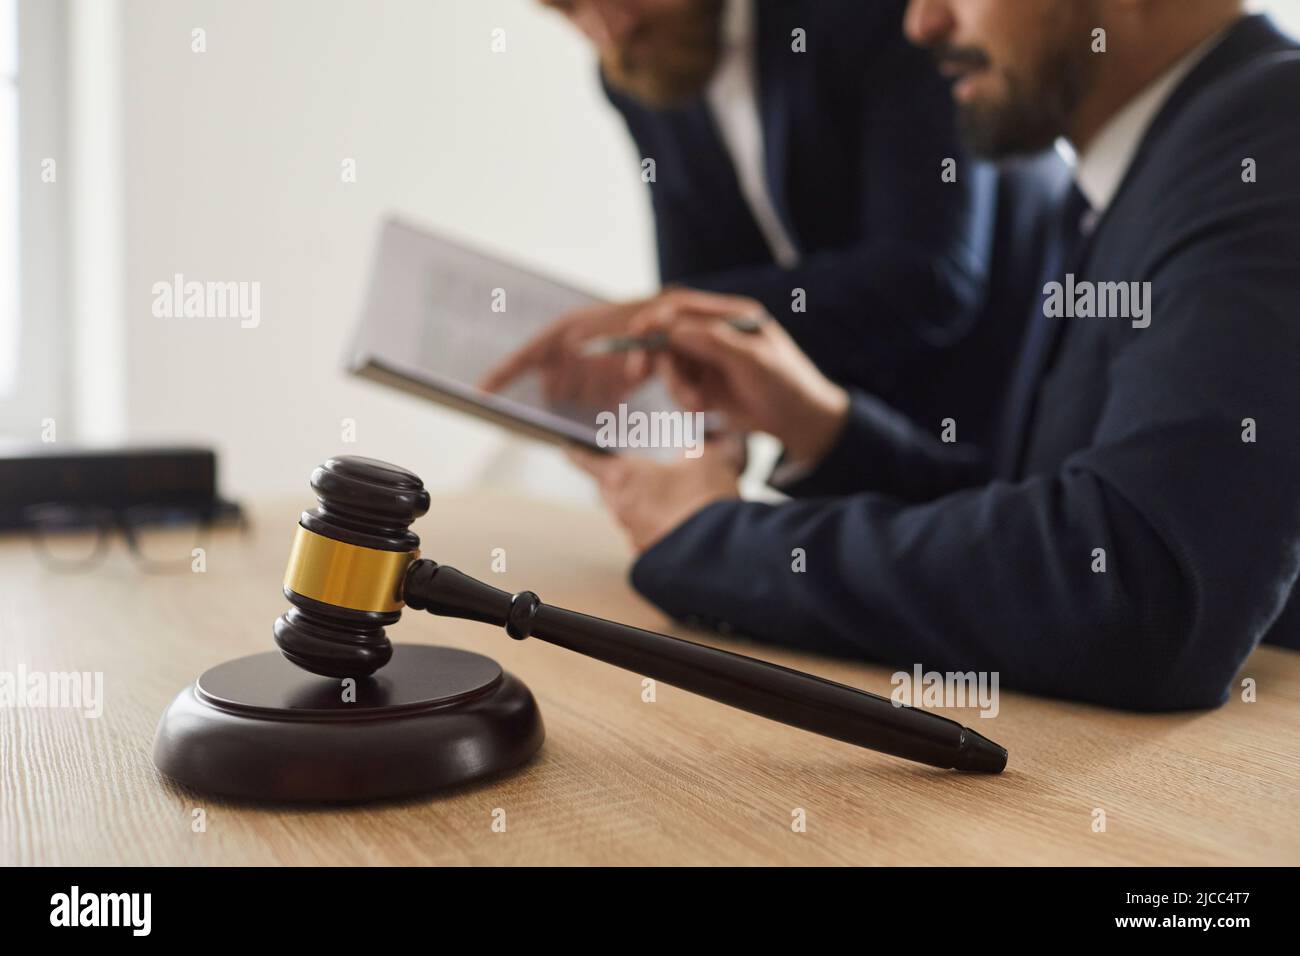 Nahaufnahme des Richters Gavel, der auf einem Schallblock auf dem Tisch vor dem Hintergrund des Richters und des Anwalts steht. Stockfoto